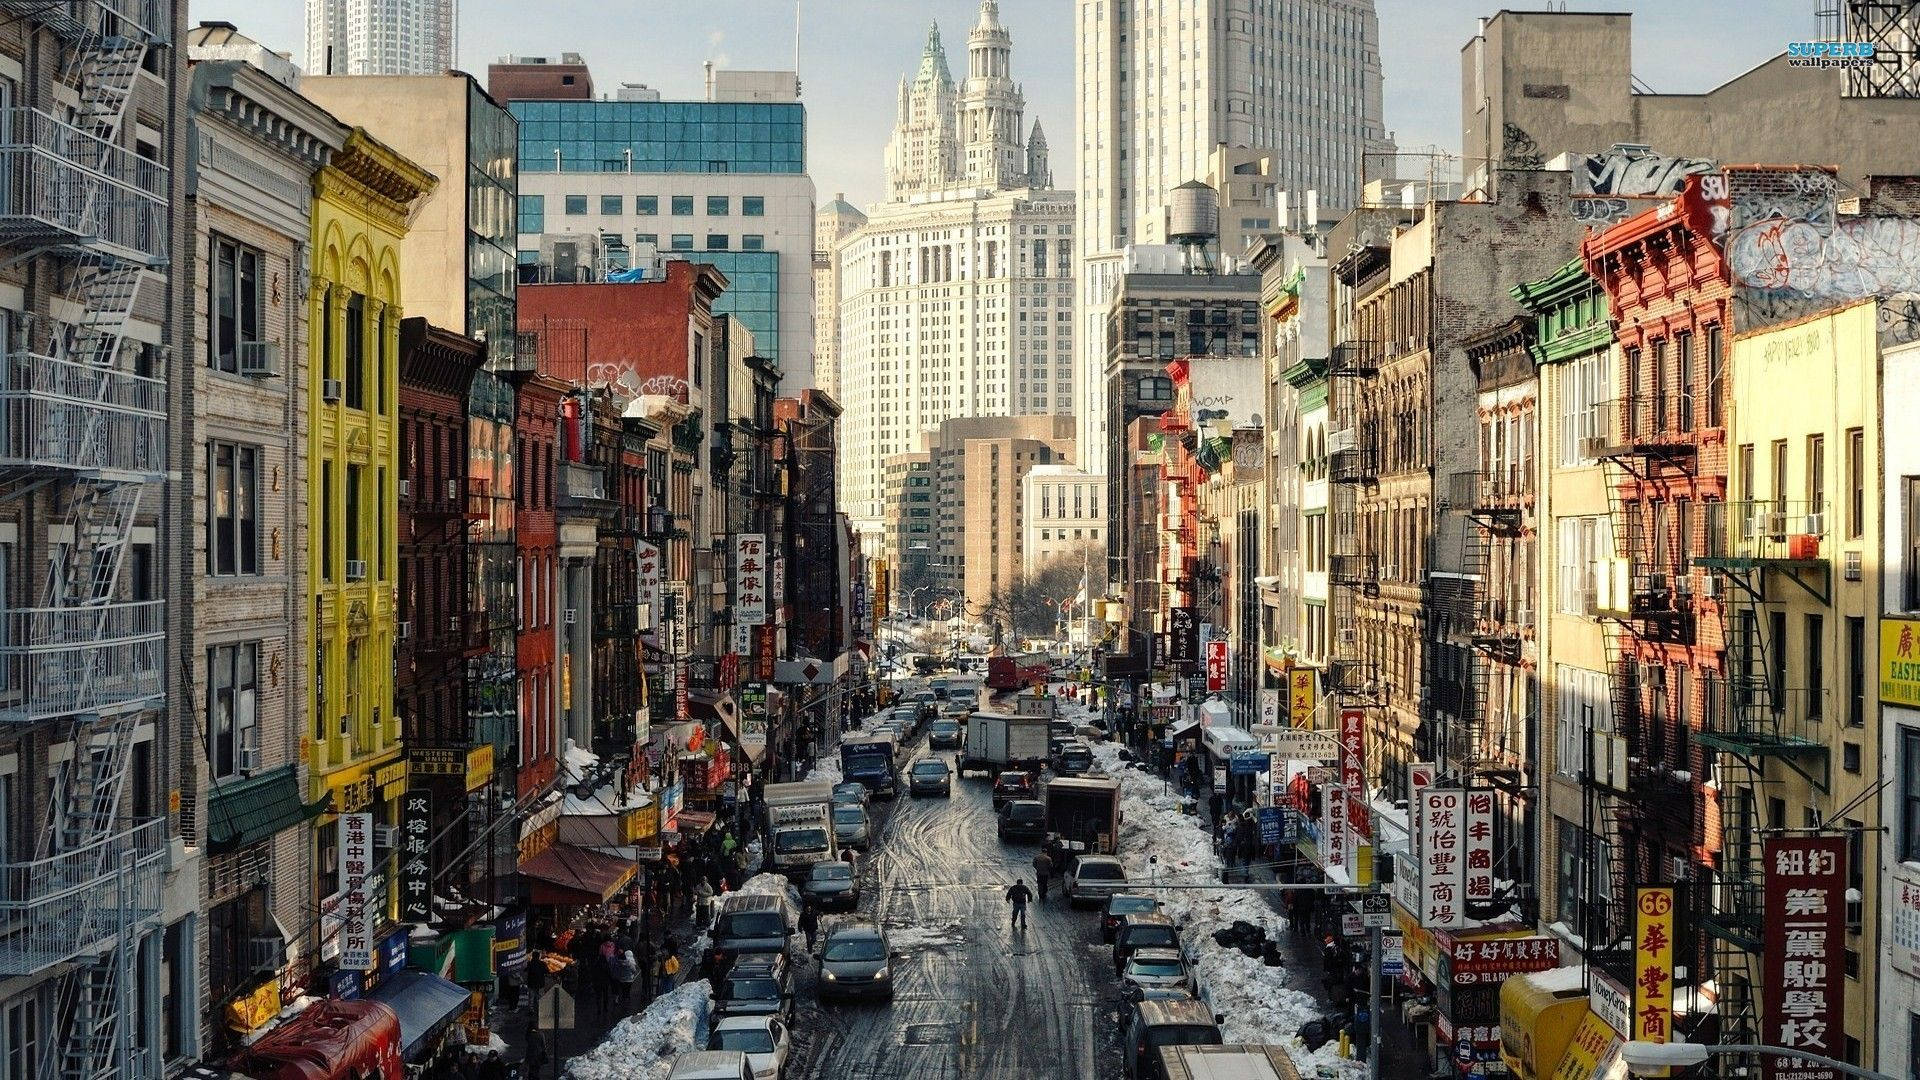 Turistersom Utforskar De Livliga Gatorna I New York City. Wallpaper